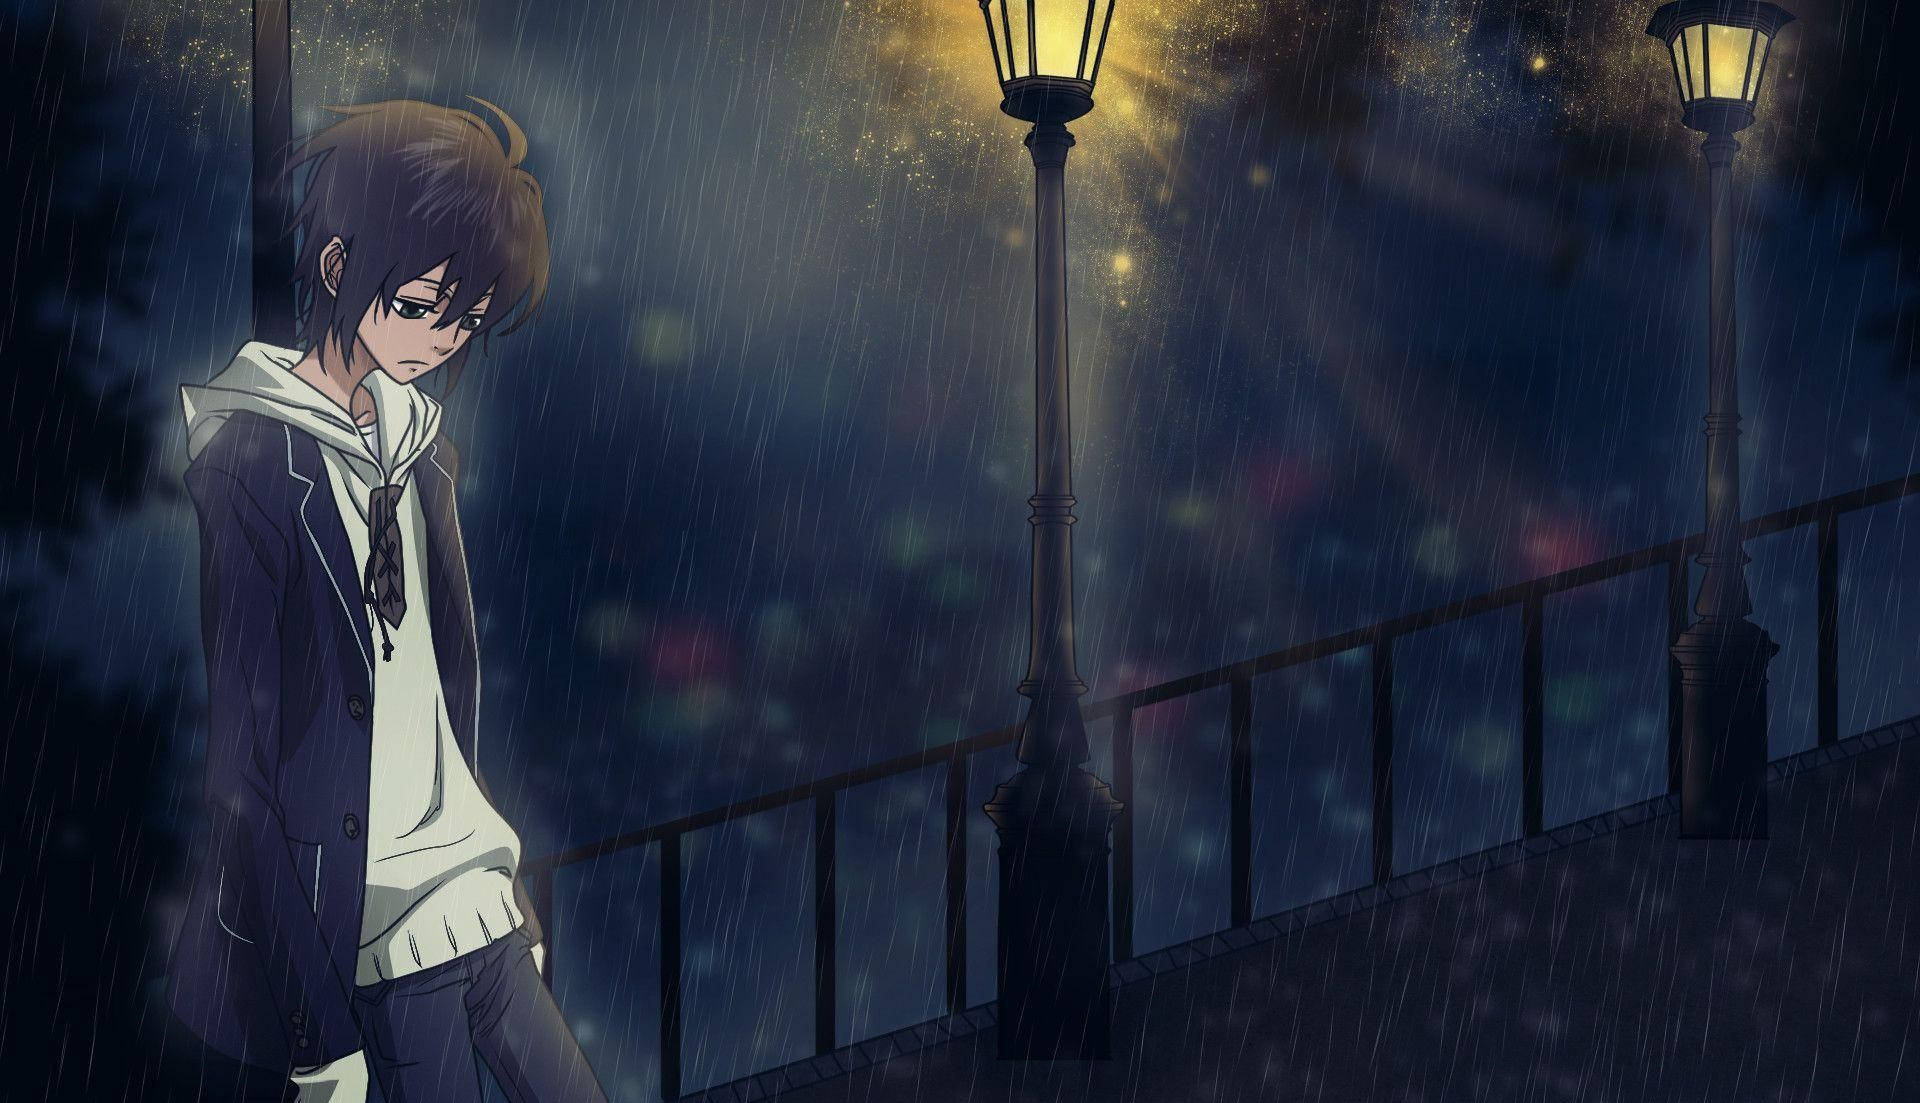 Sad Anime Boy In Rain